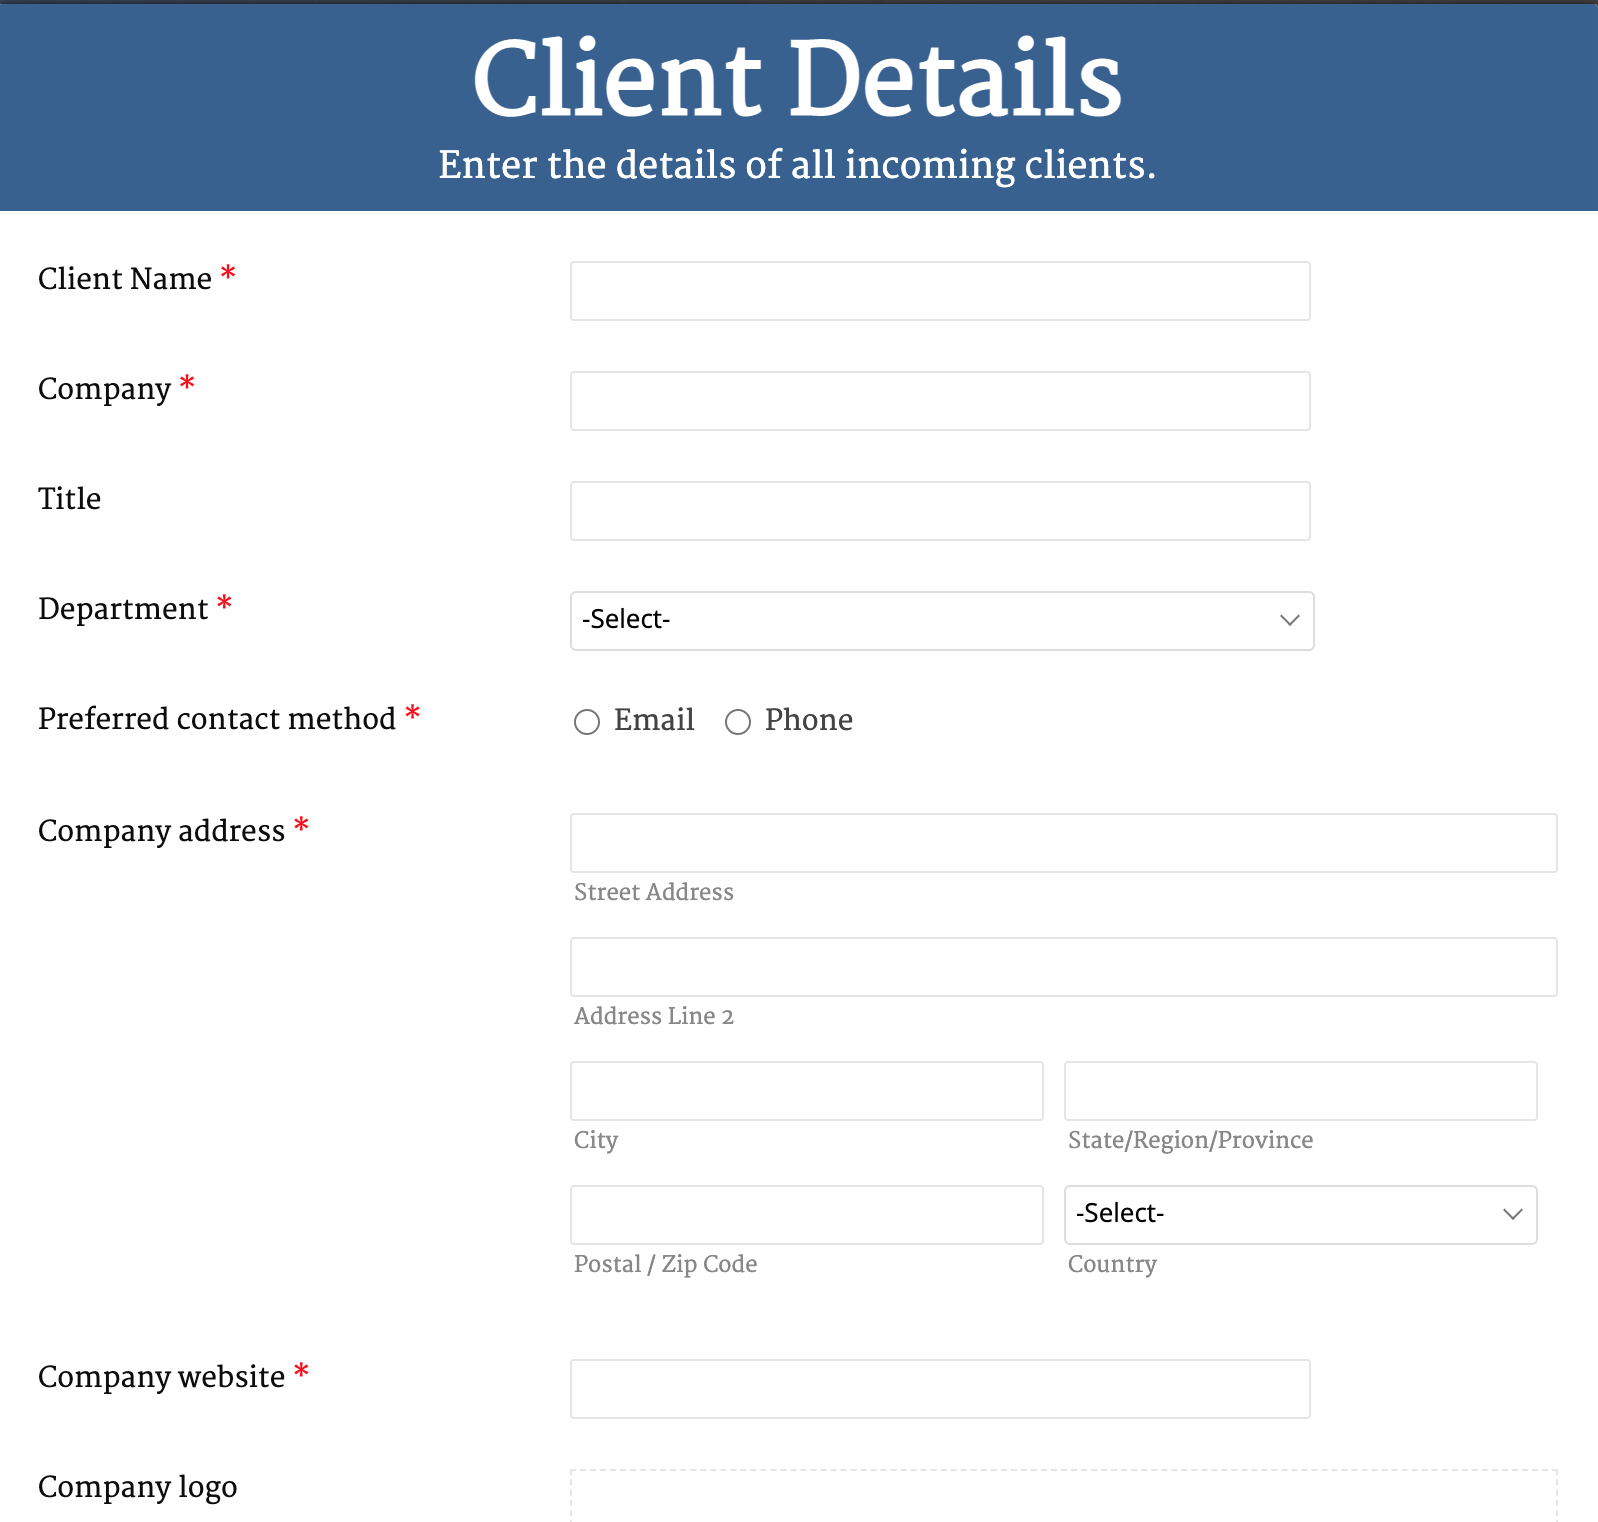 Client Details Form